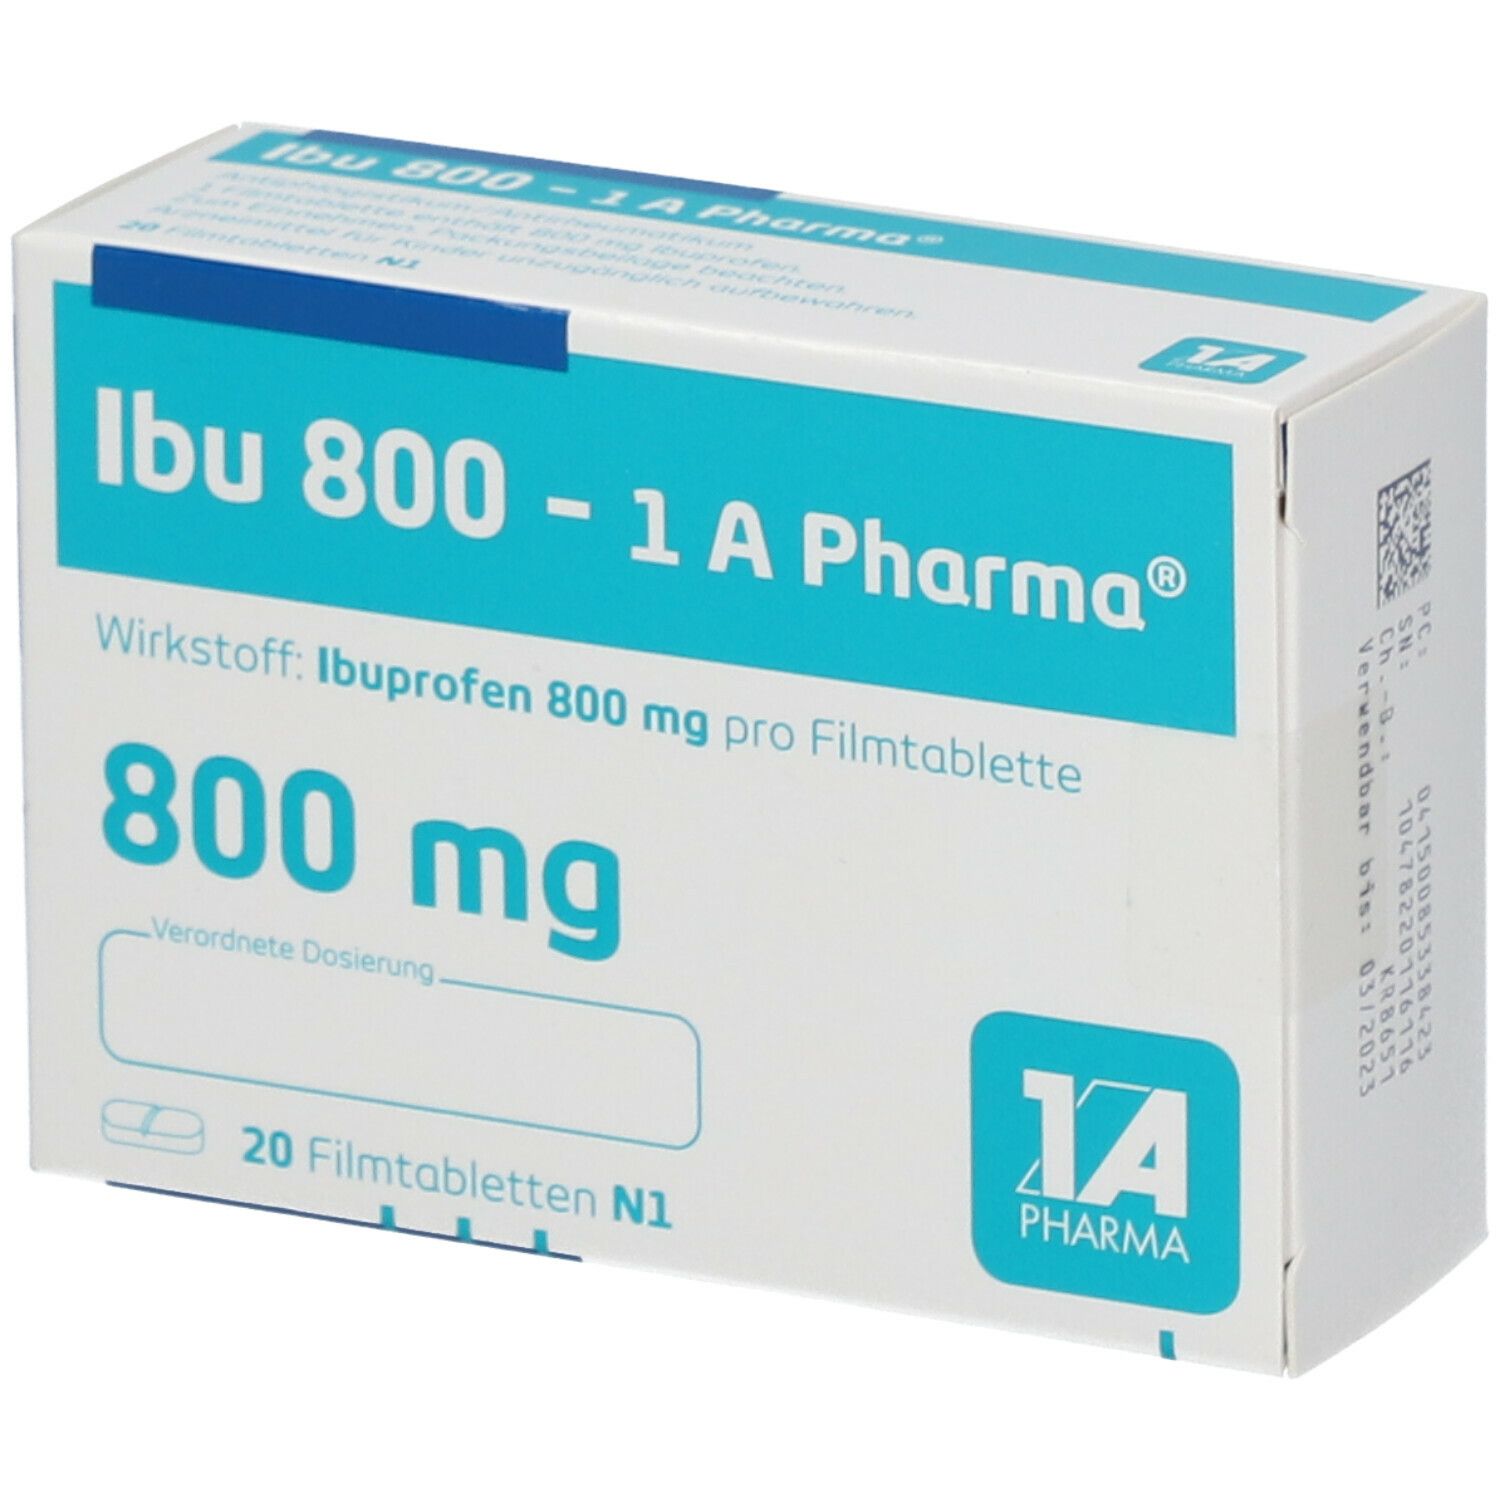 Ibu 800 - 1 A Pharma®